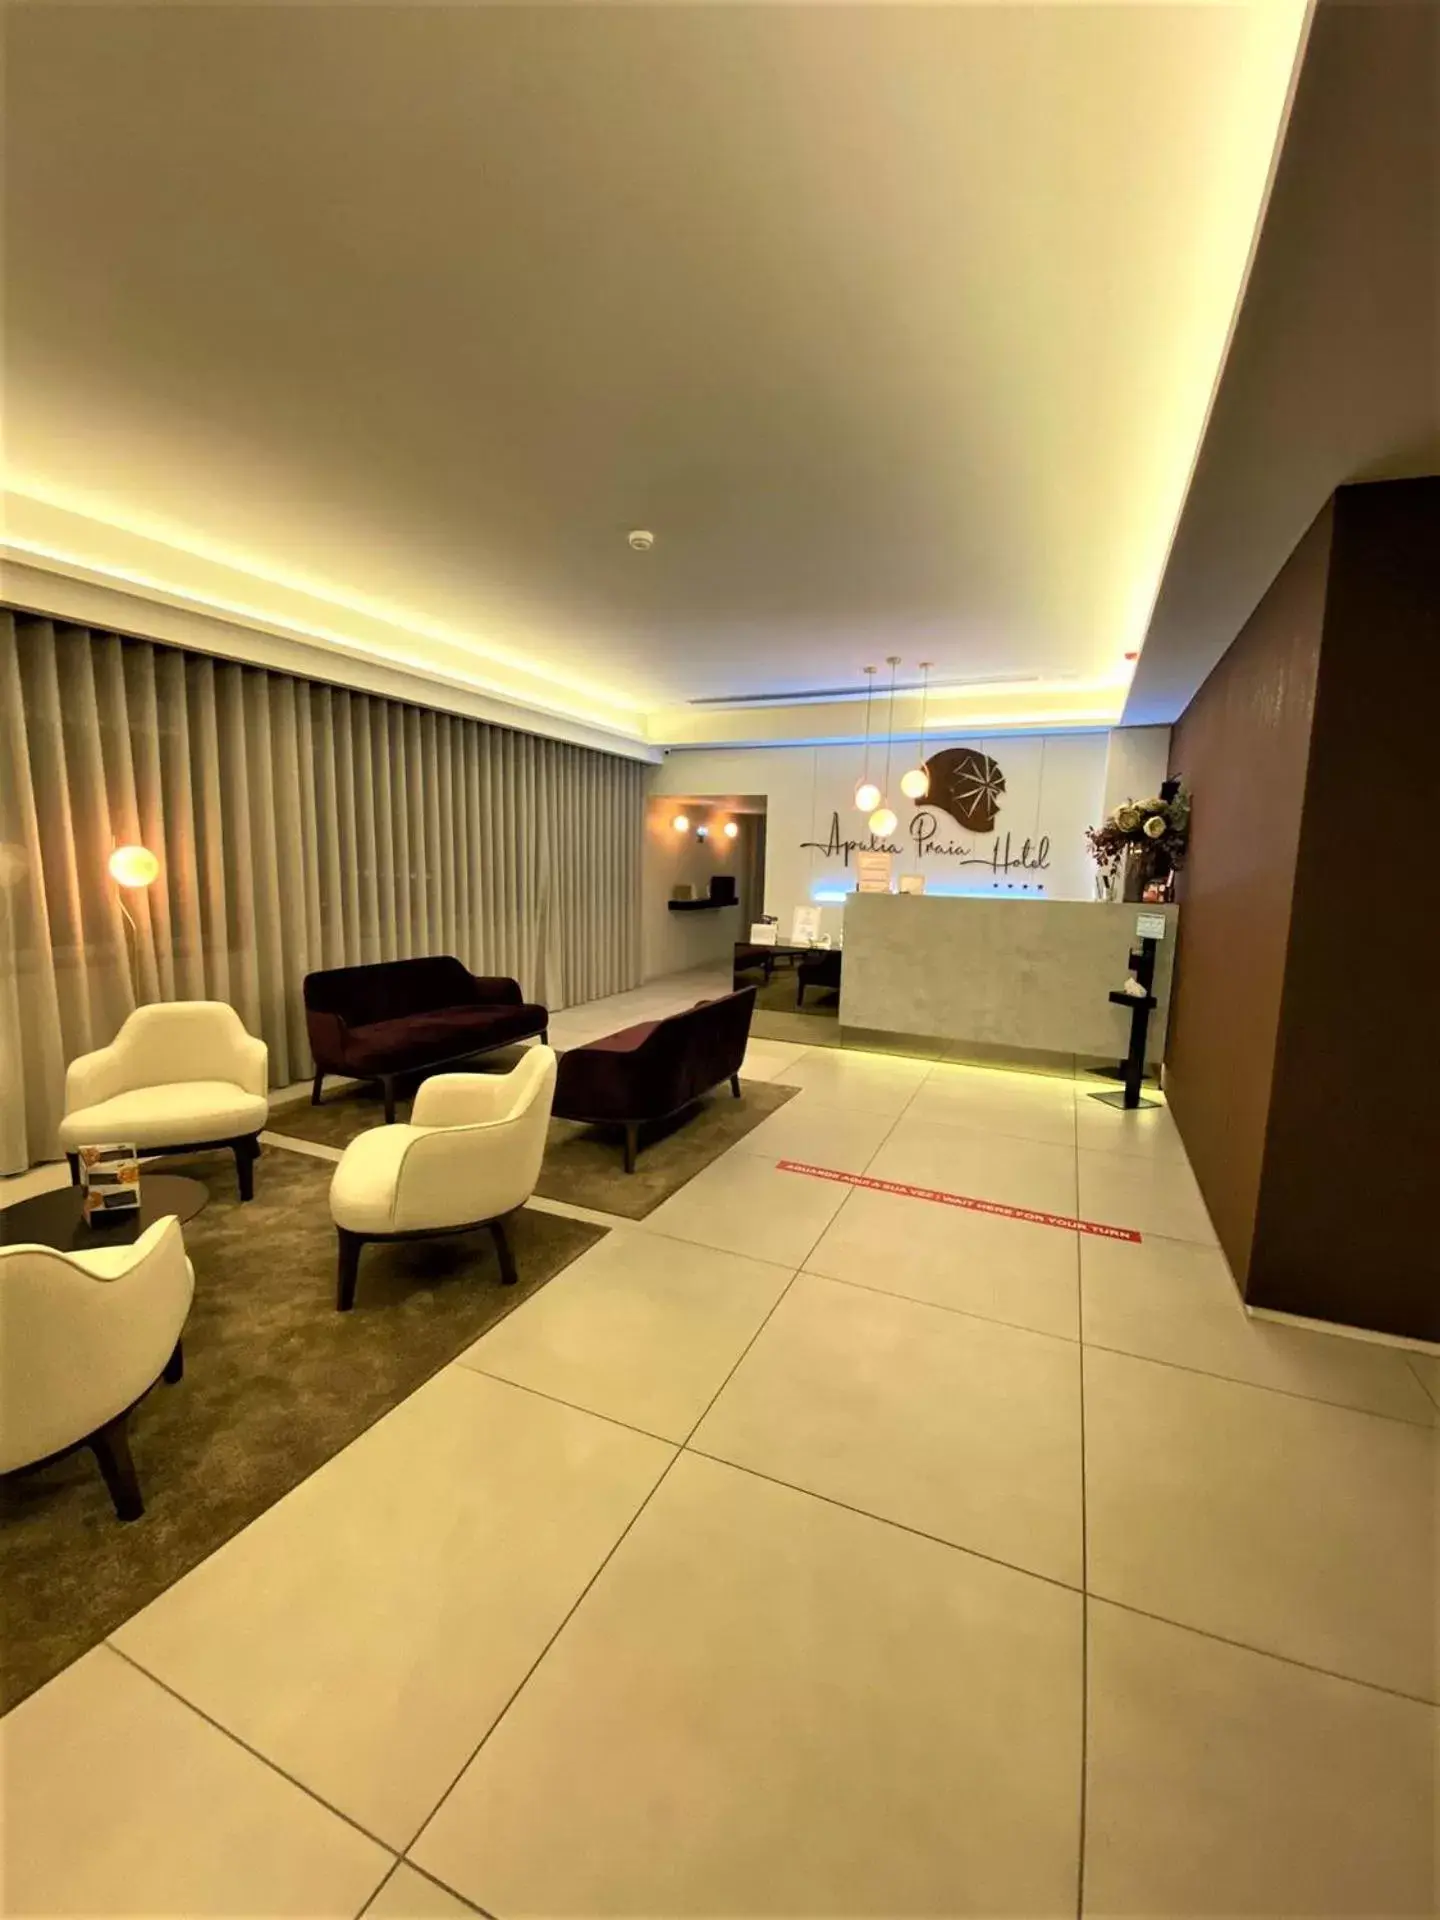 Lobby or reception in Apulia Praia Hotel